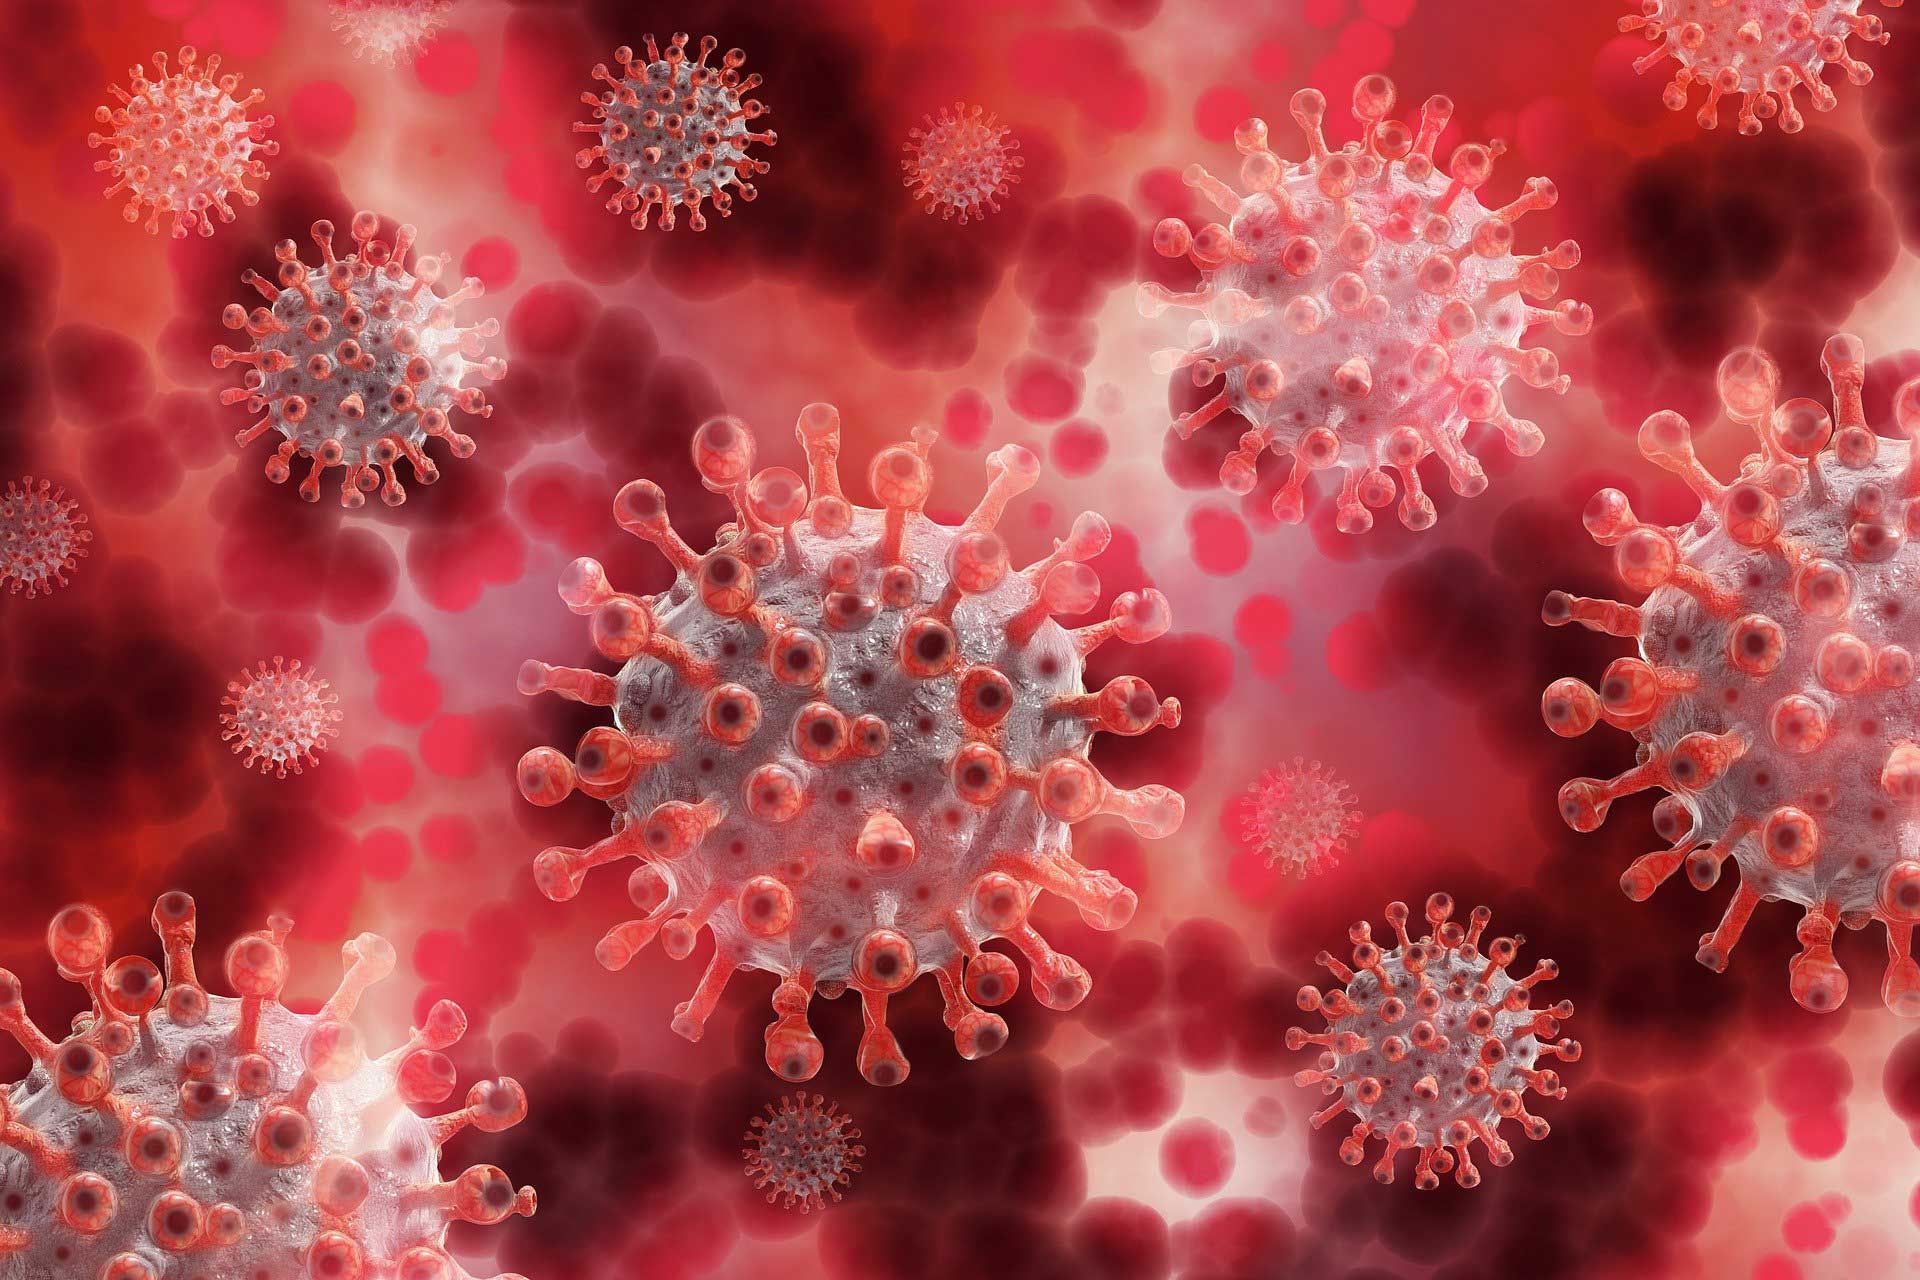 Immunsystem stärken – Corona Virus